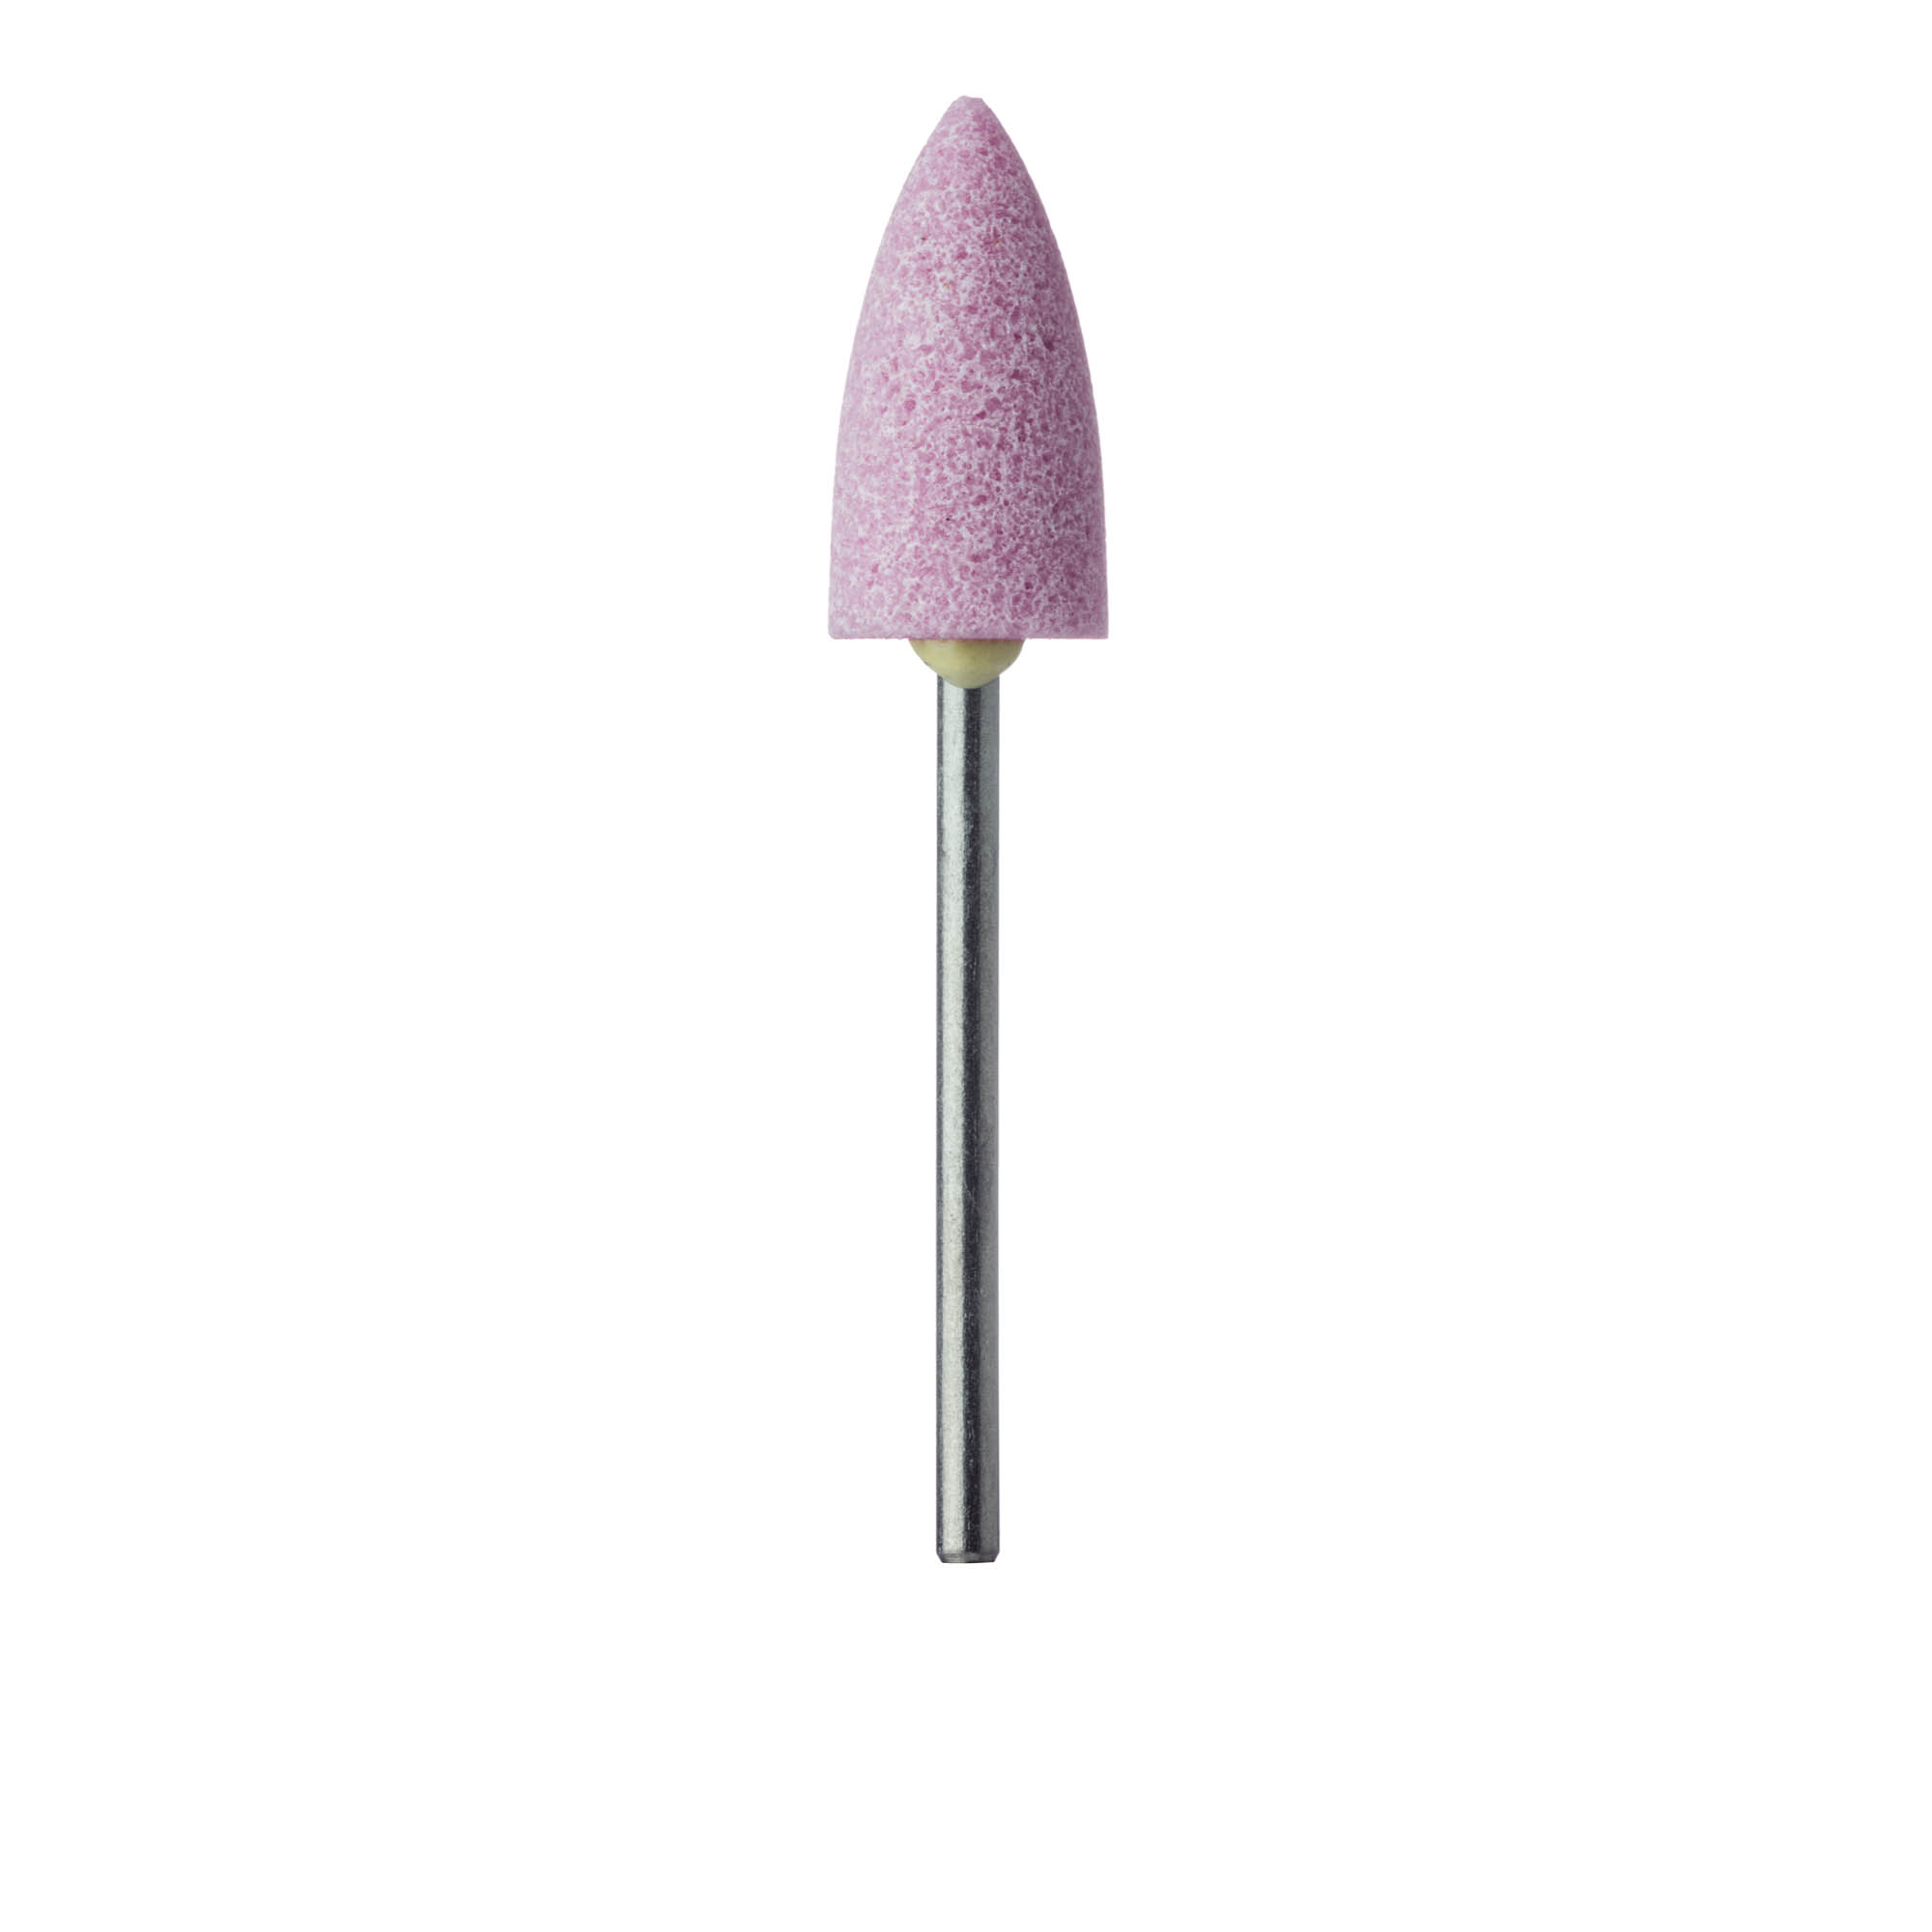 751-100-HP-P Abrasive, Pink, Large Long Flame, 10mm Ø, Hard Bonding, Medium, HP